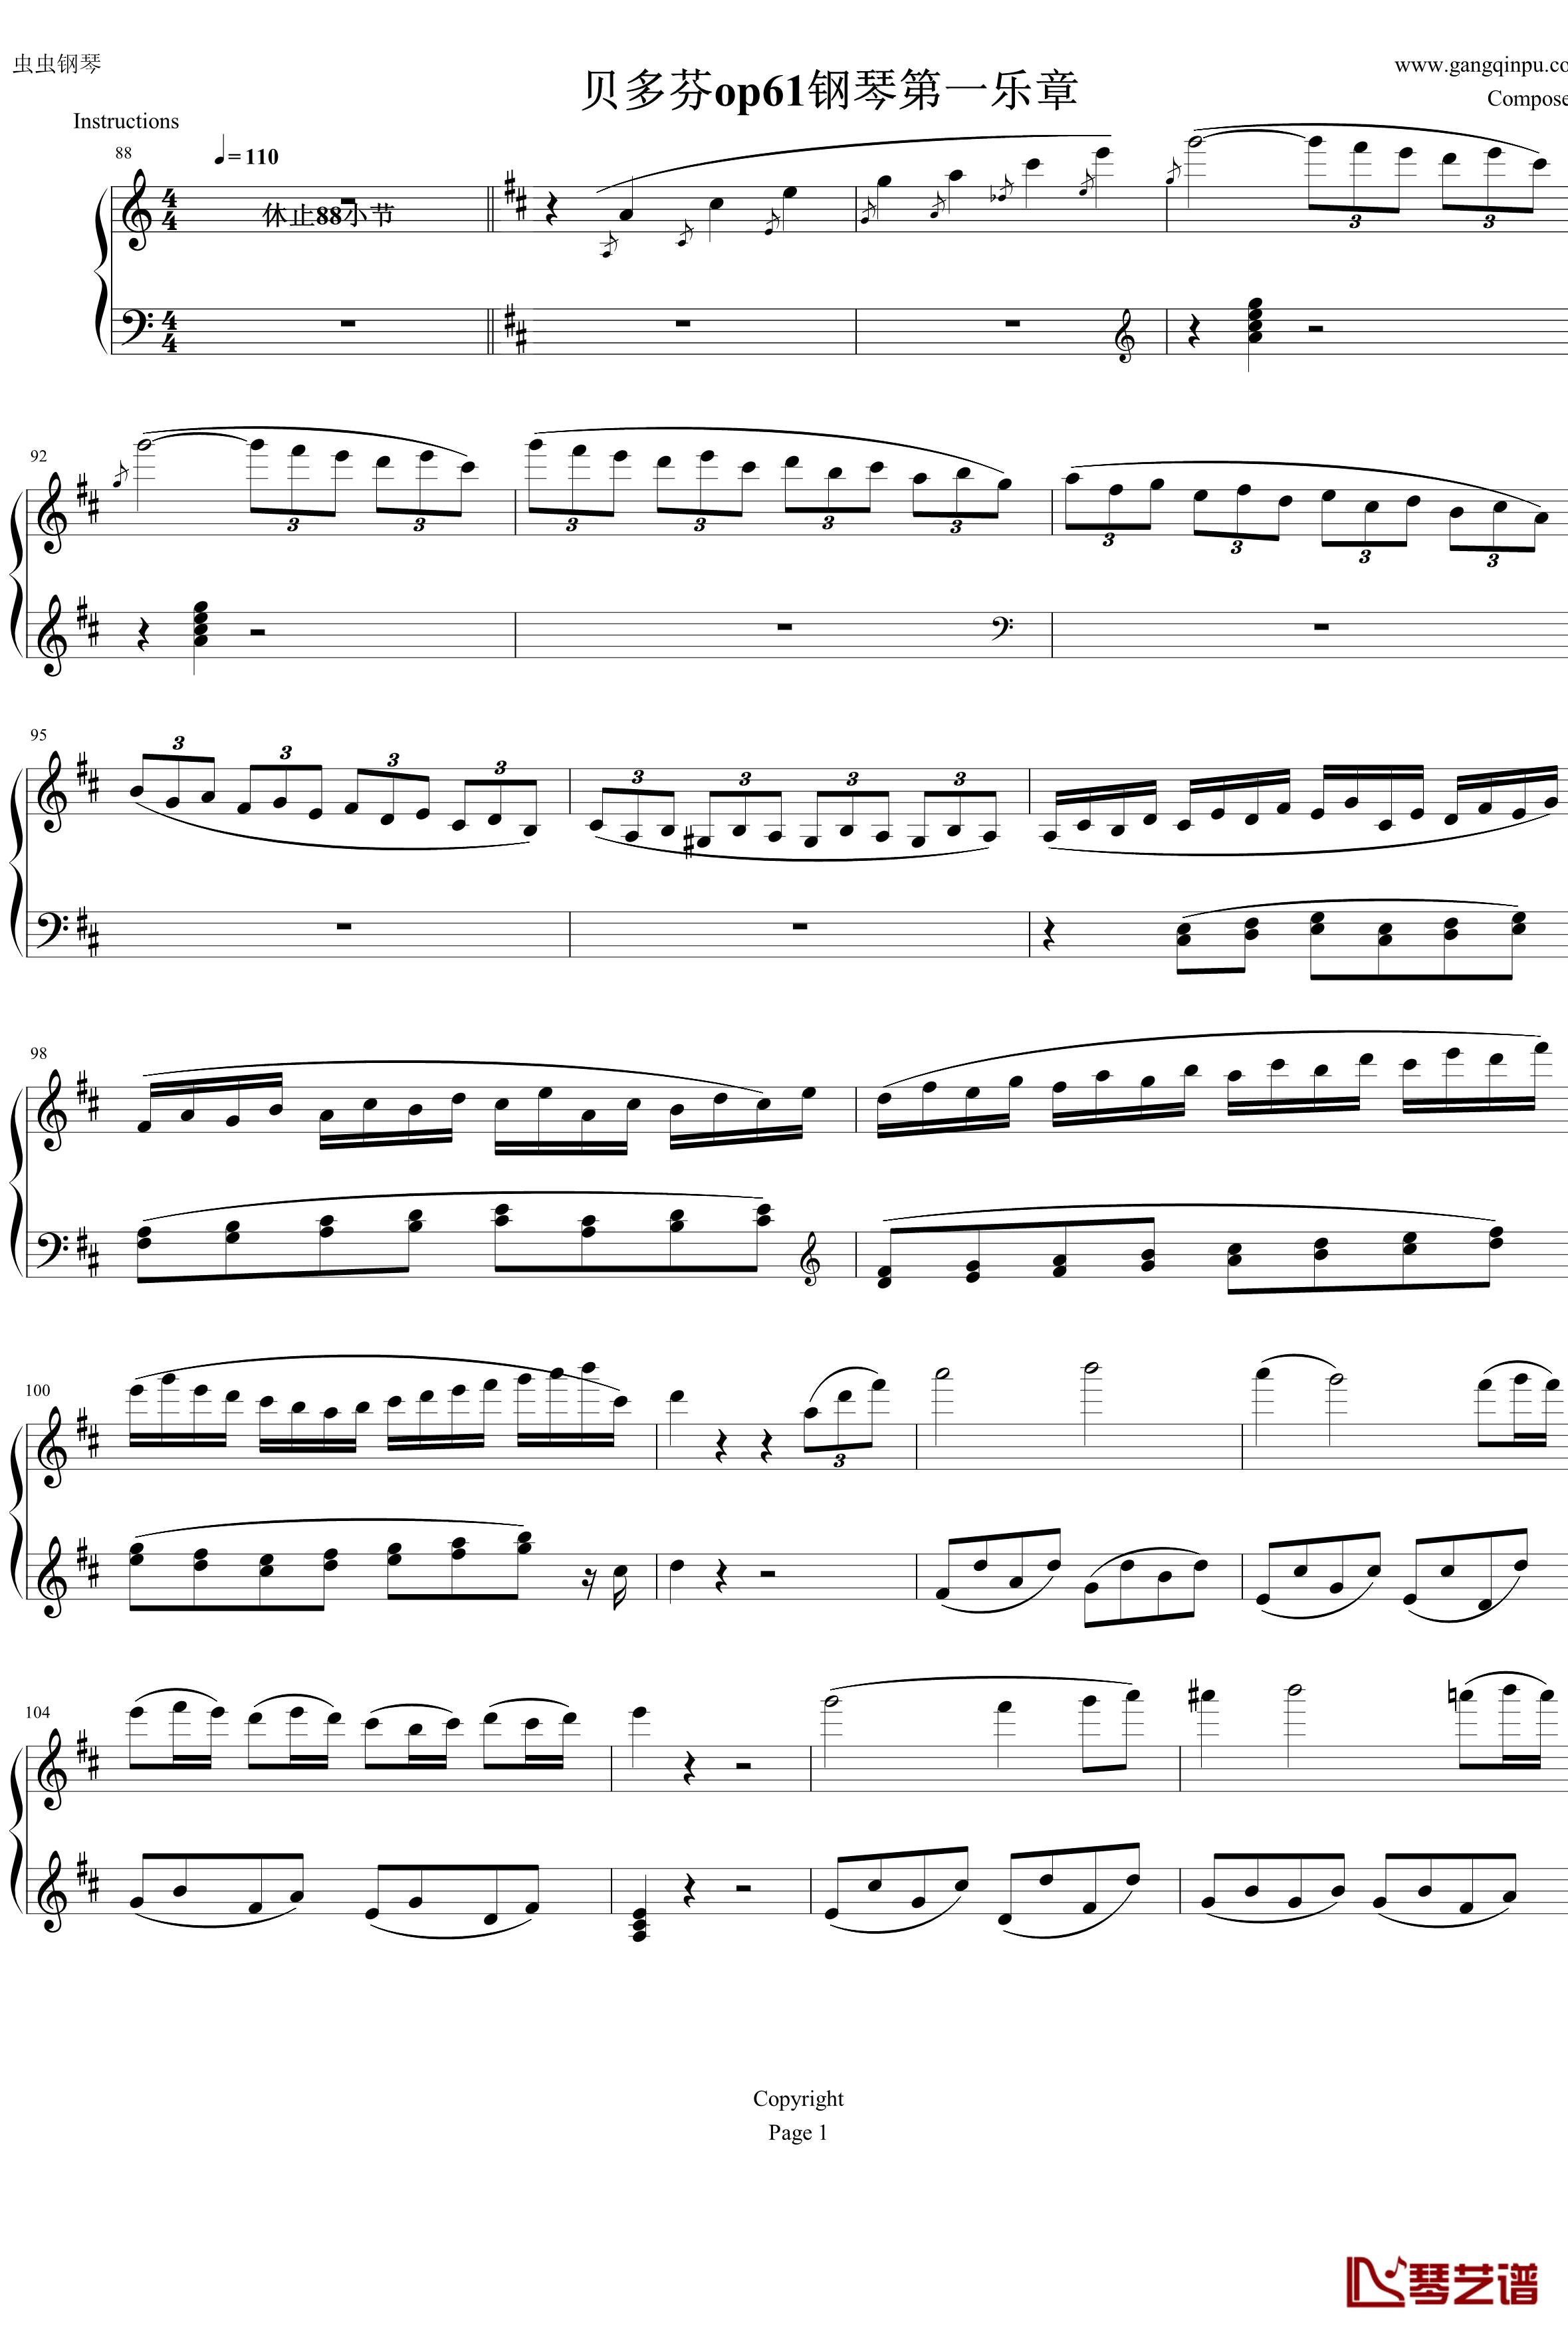 钢琴协奏曲Op61第一乐章钢琴谱-贝多芬-beethoven1